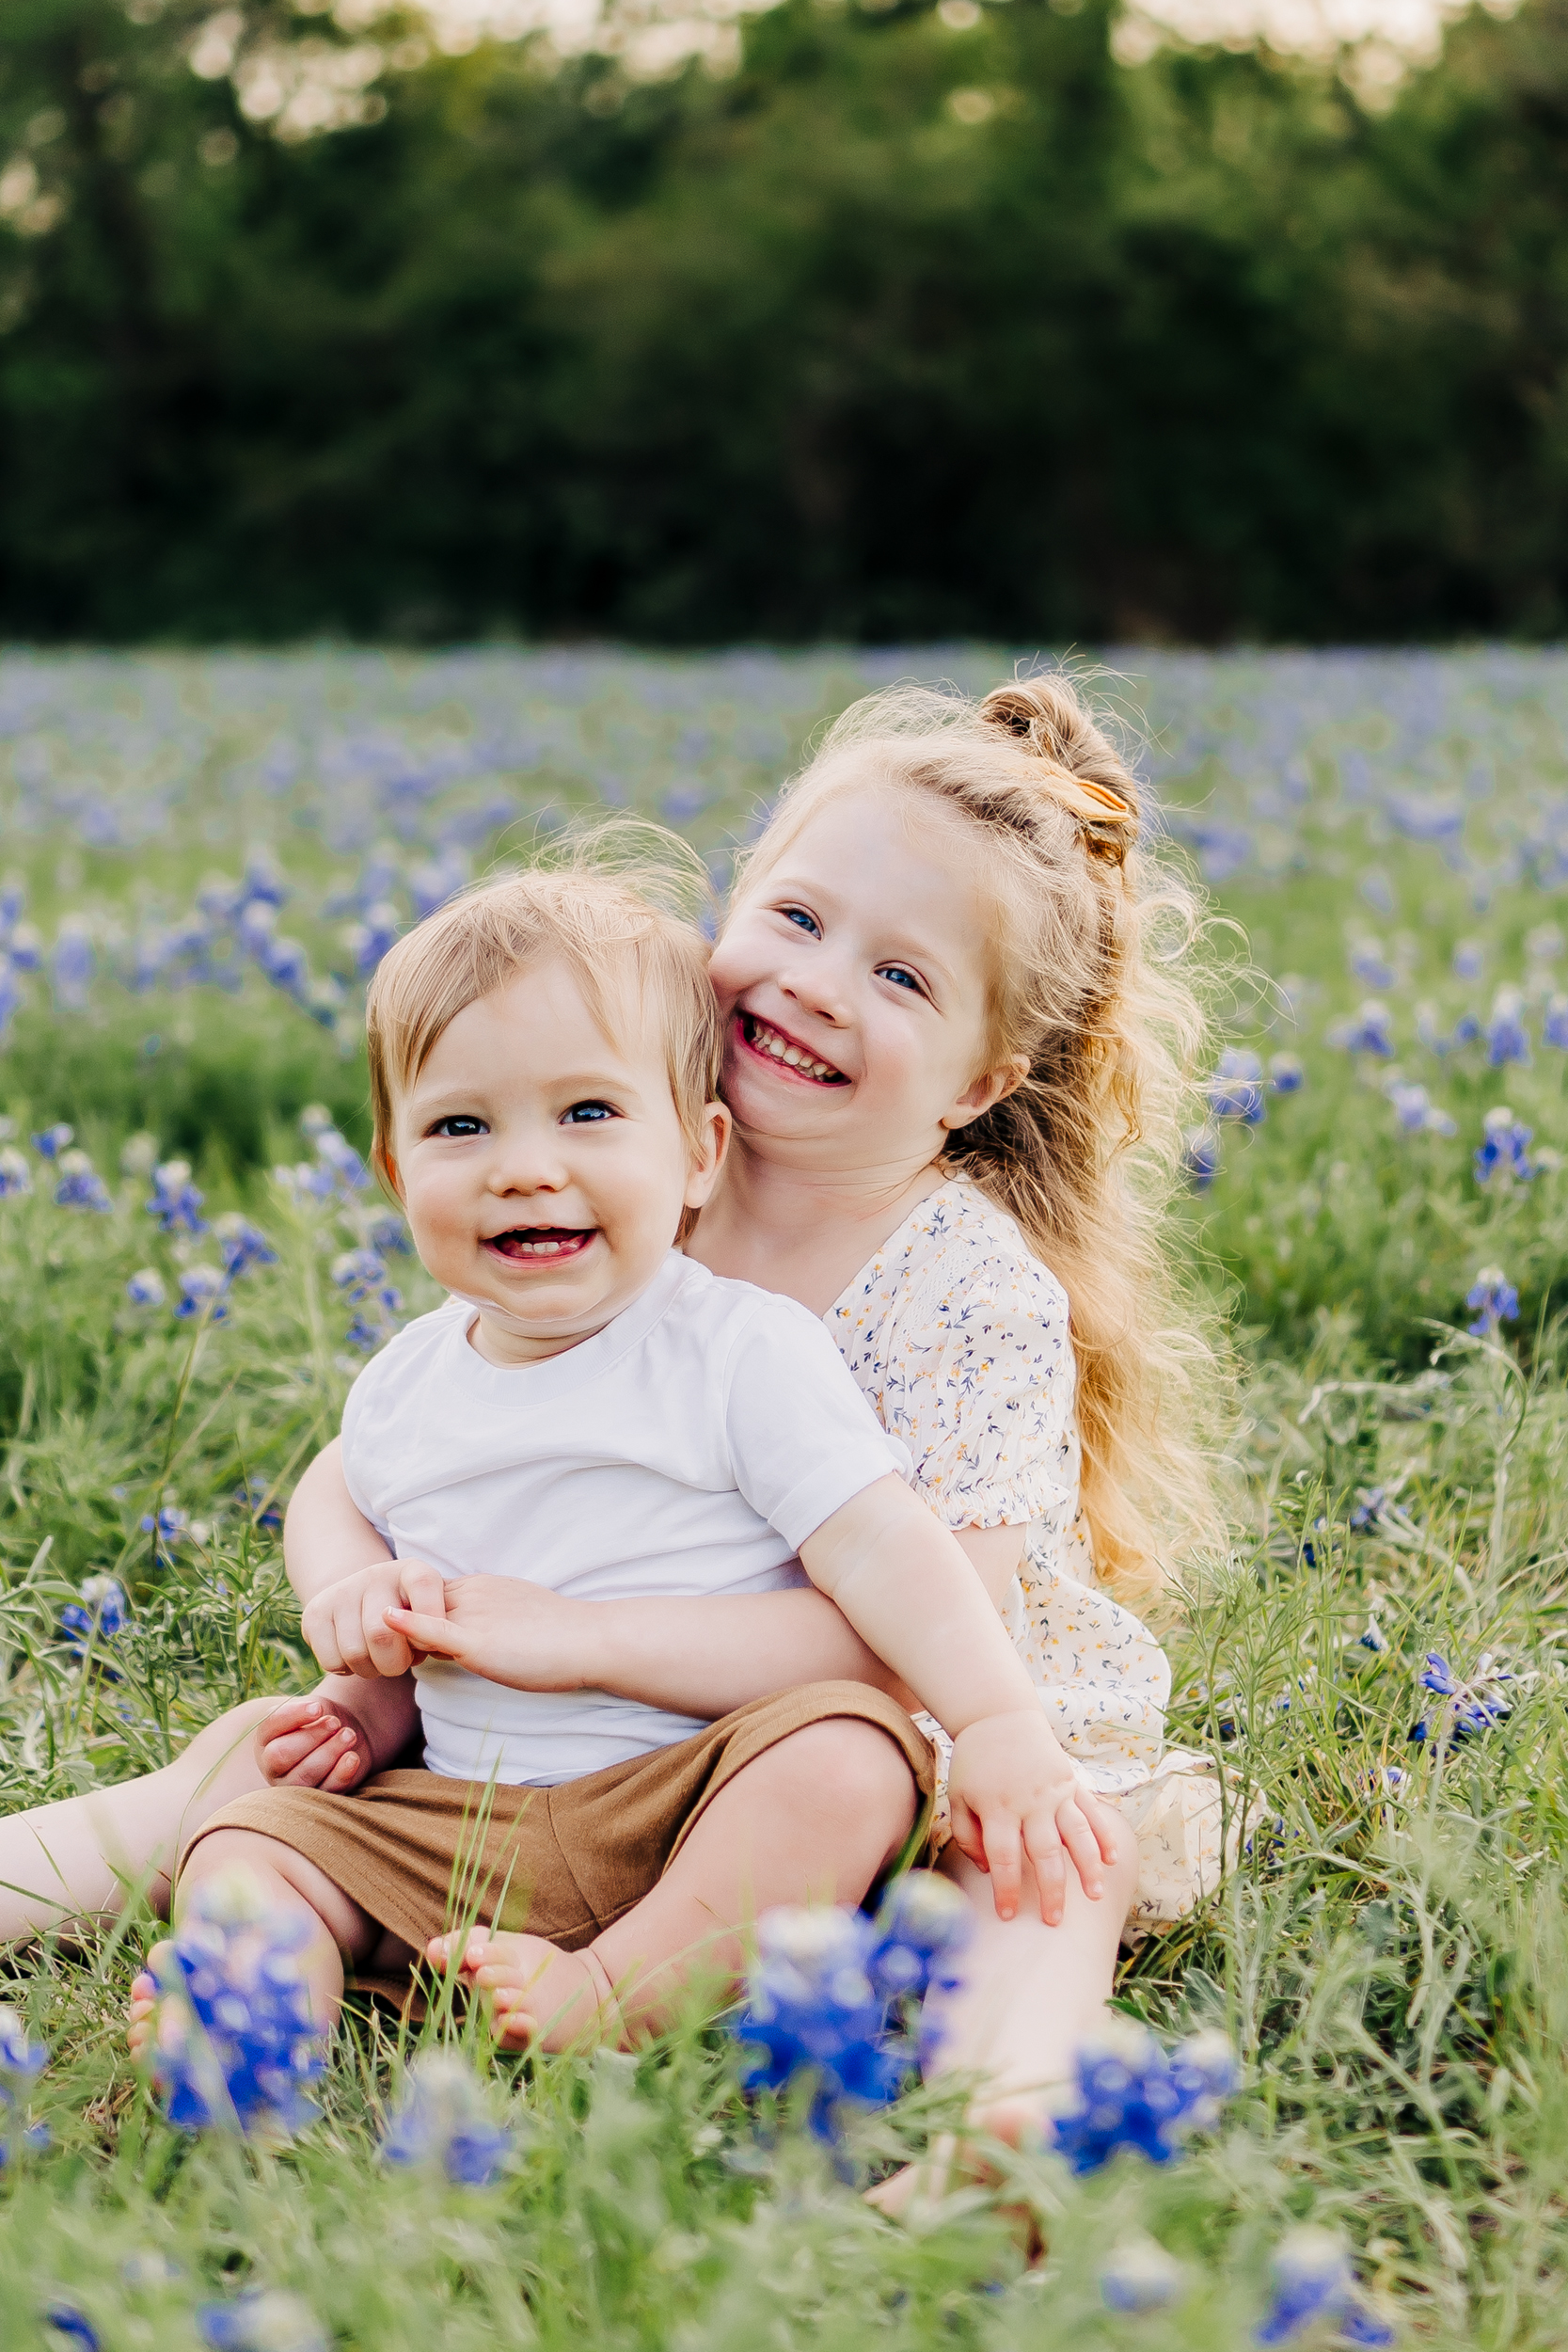 How to have stress free family photos | Plano, Texas Family Photographer | via brittnierenee.com